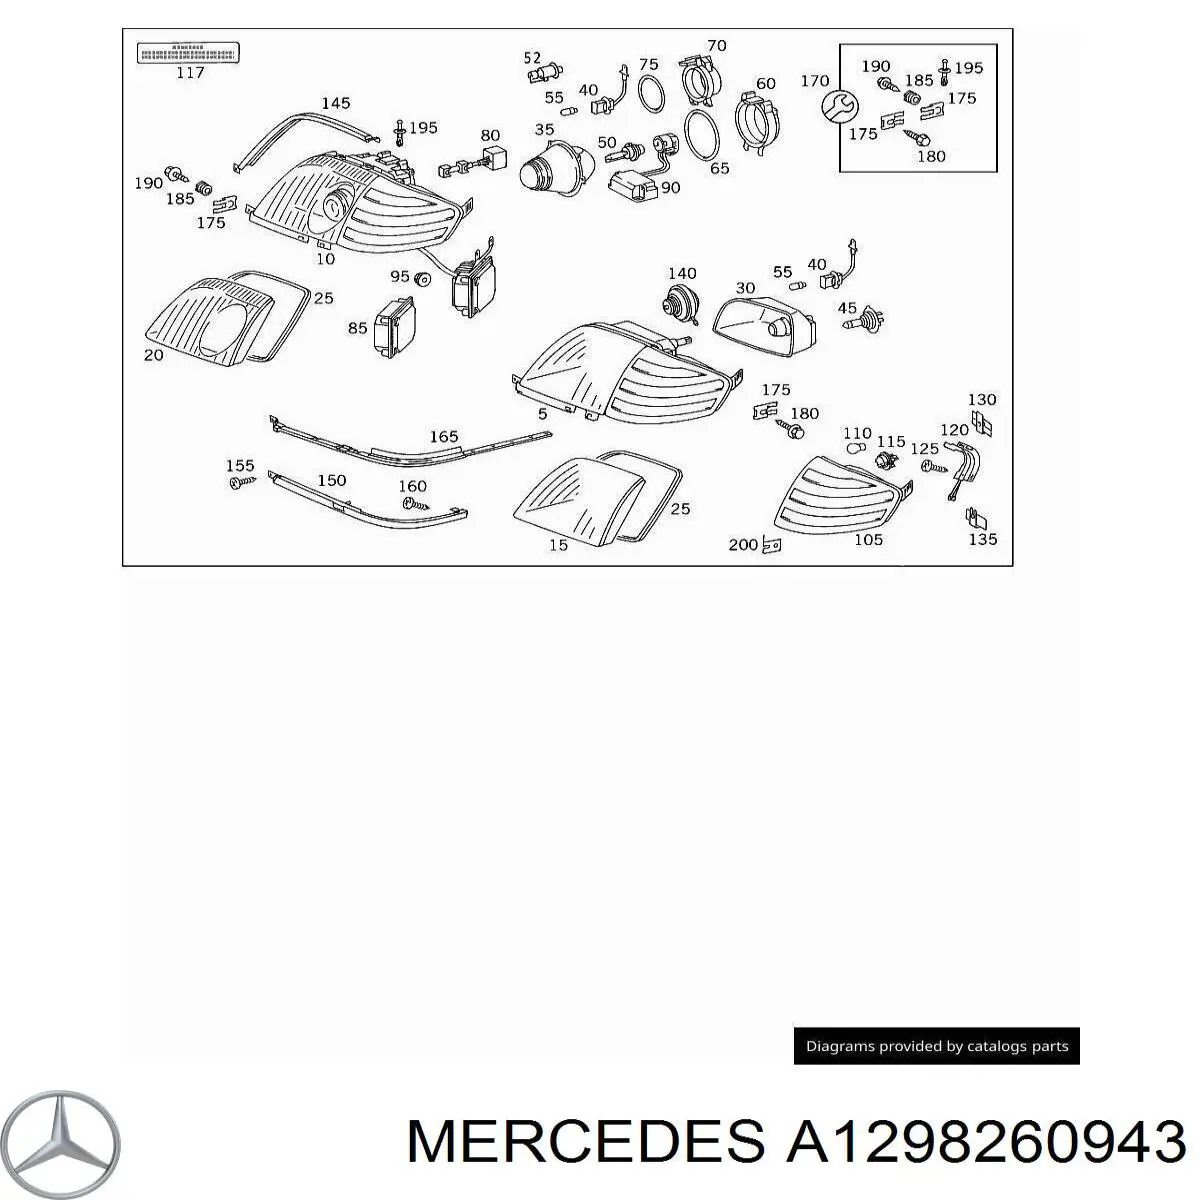 A1298260943 Mercedes указатель поворота левый